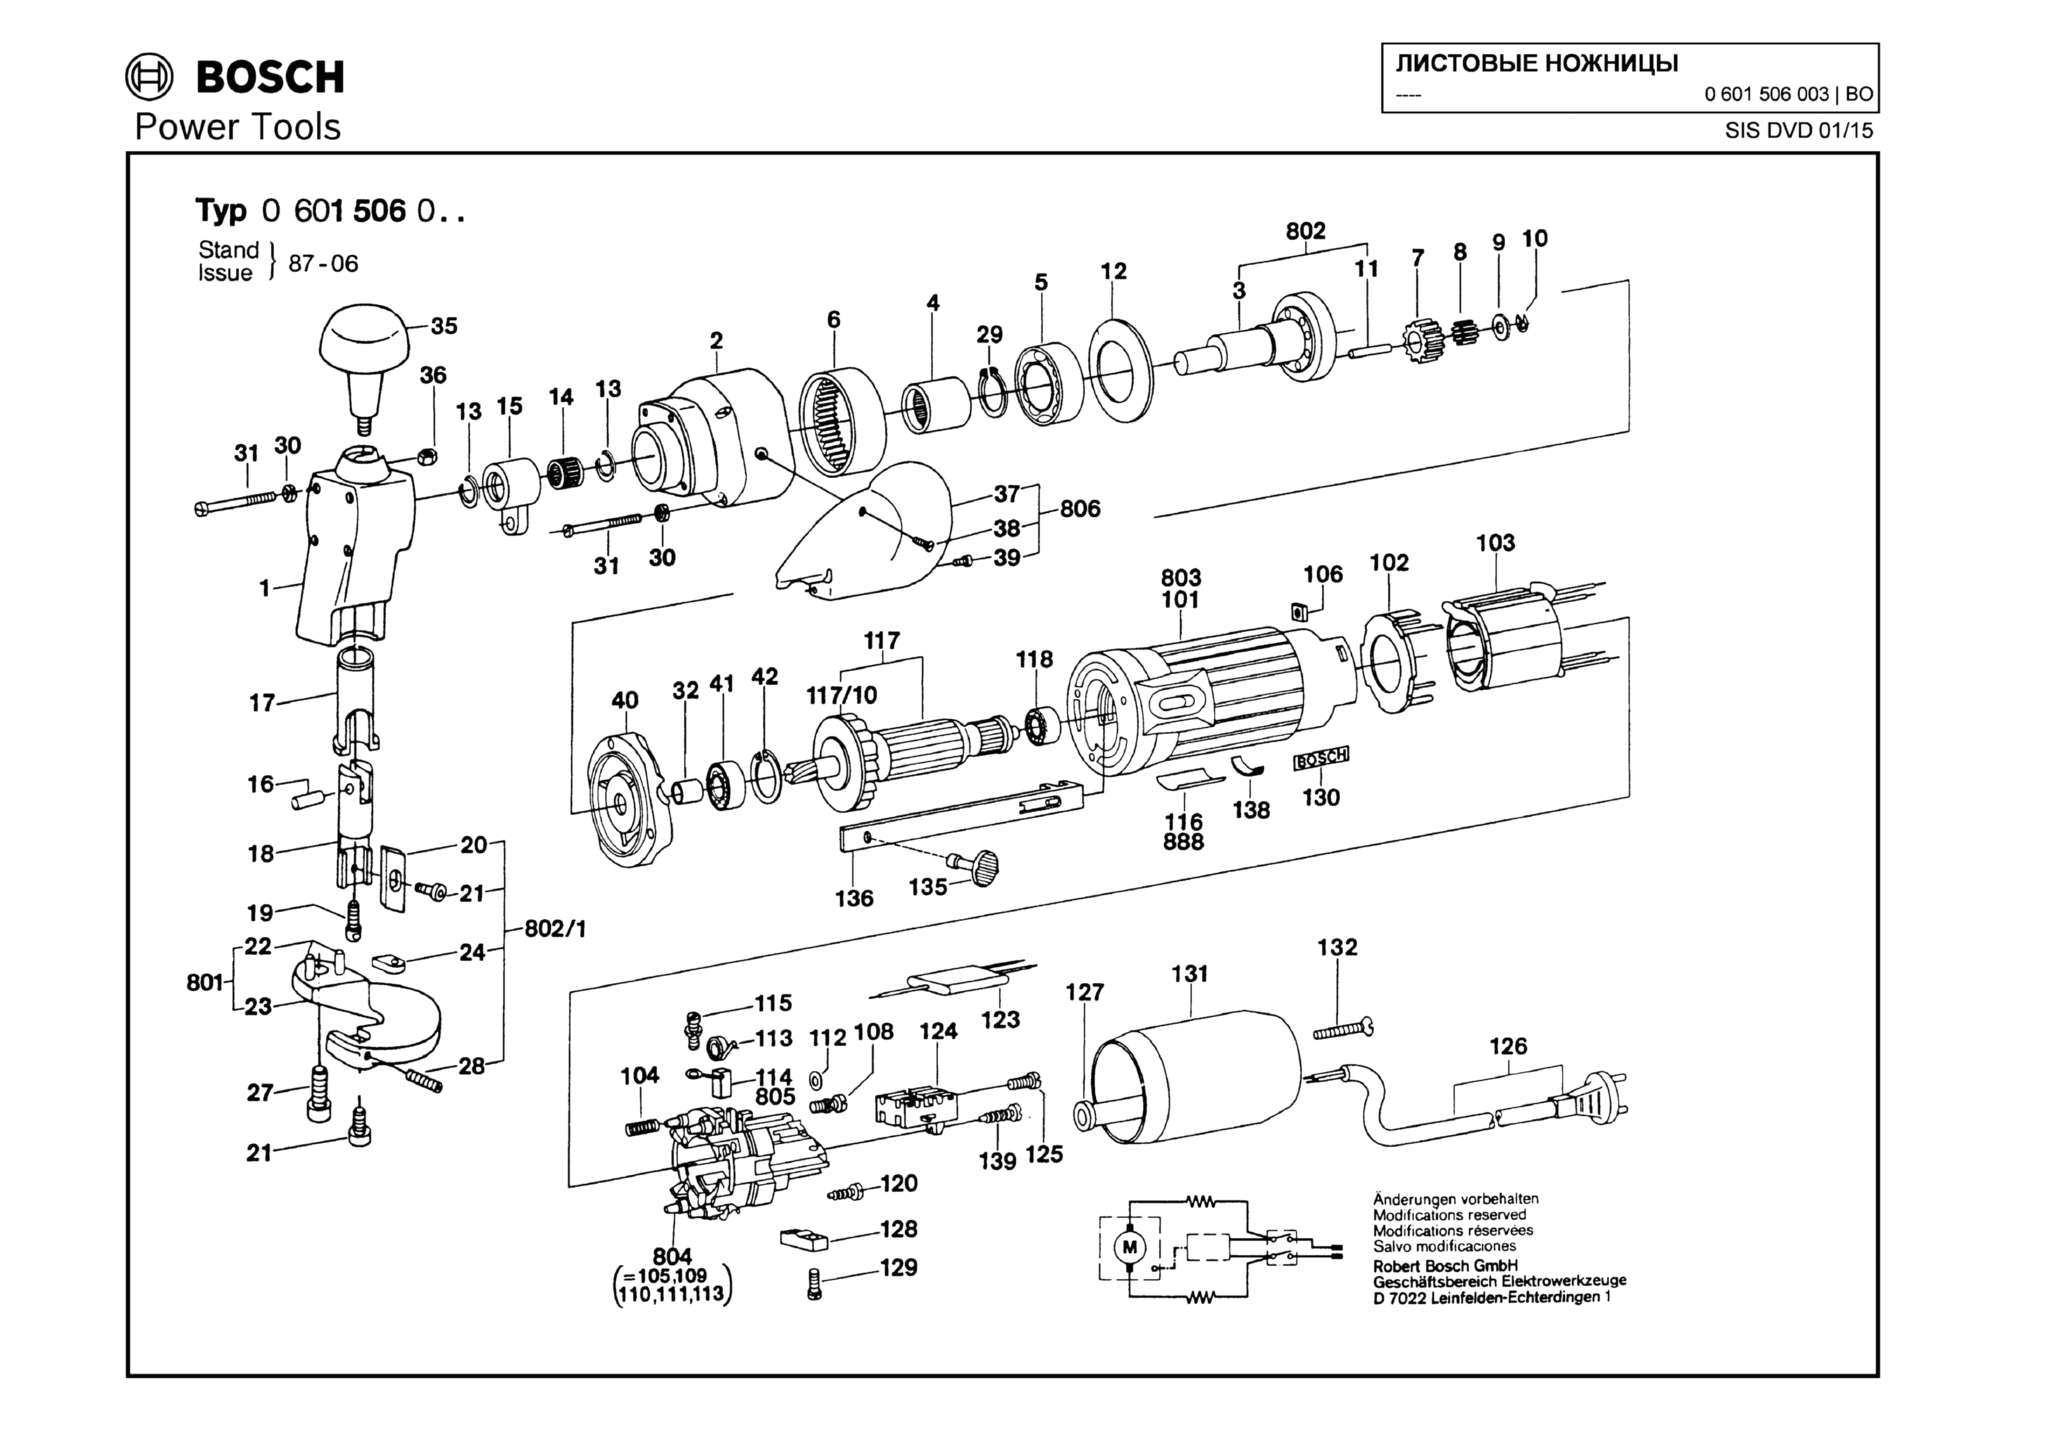 Запчасти, схема и деталировка Bosch (ТИП 0601506003)